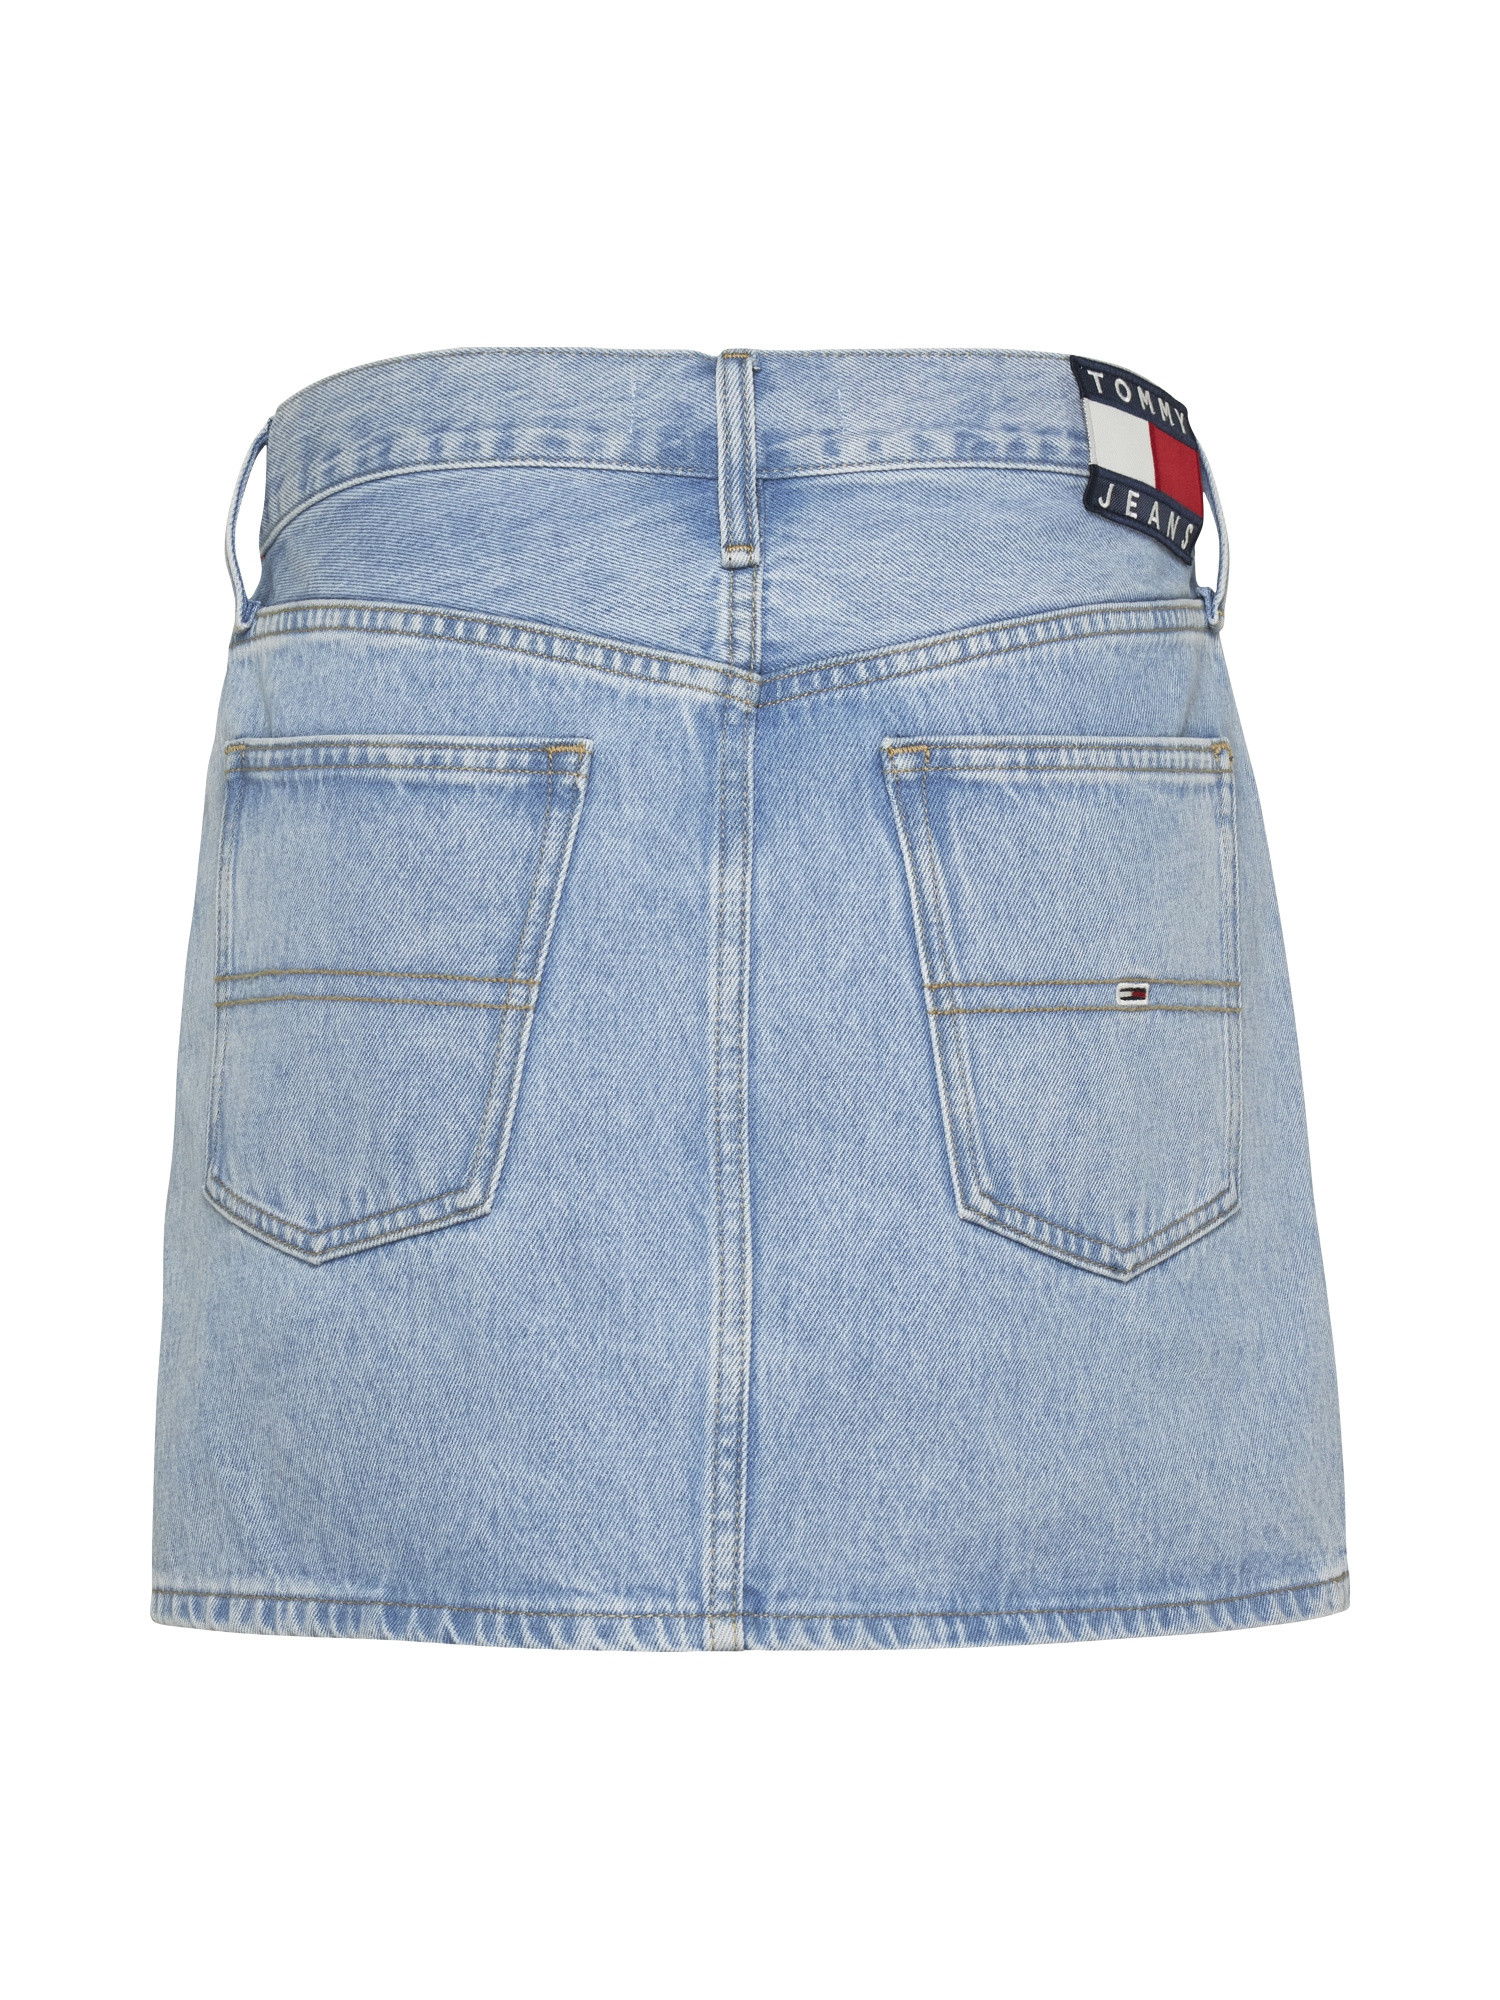 Tommy Jeans - Minigonna in denim cinque tasche, Denim, large image number 1